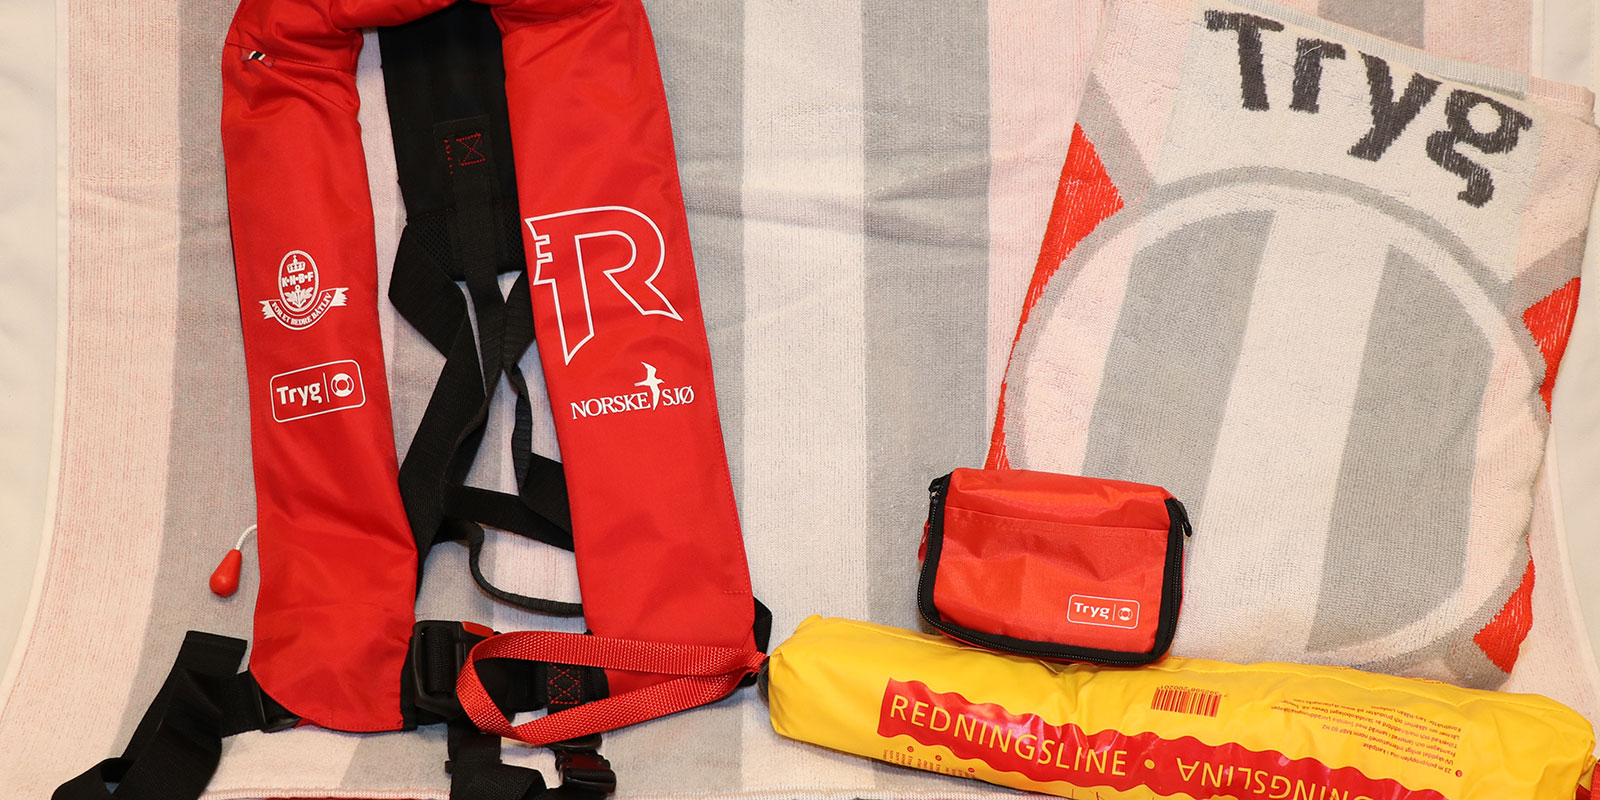 Redningsvest, redningsline, førstehjelpspute og to strandhåndklær